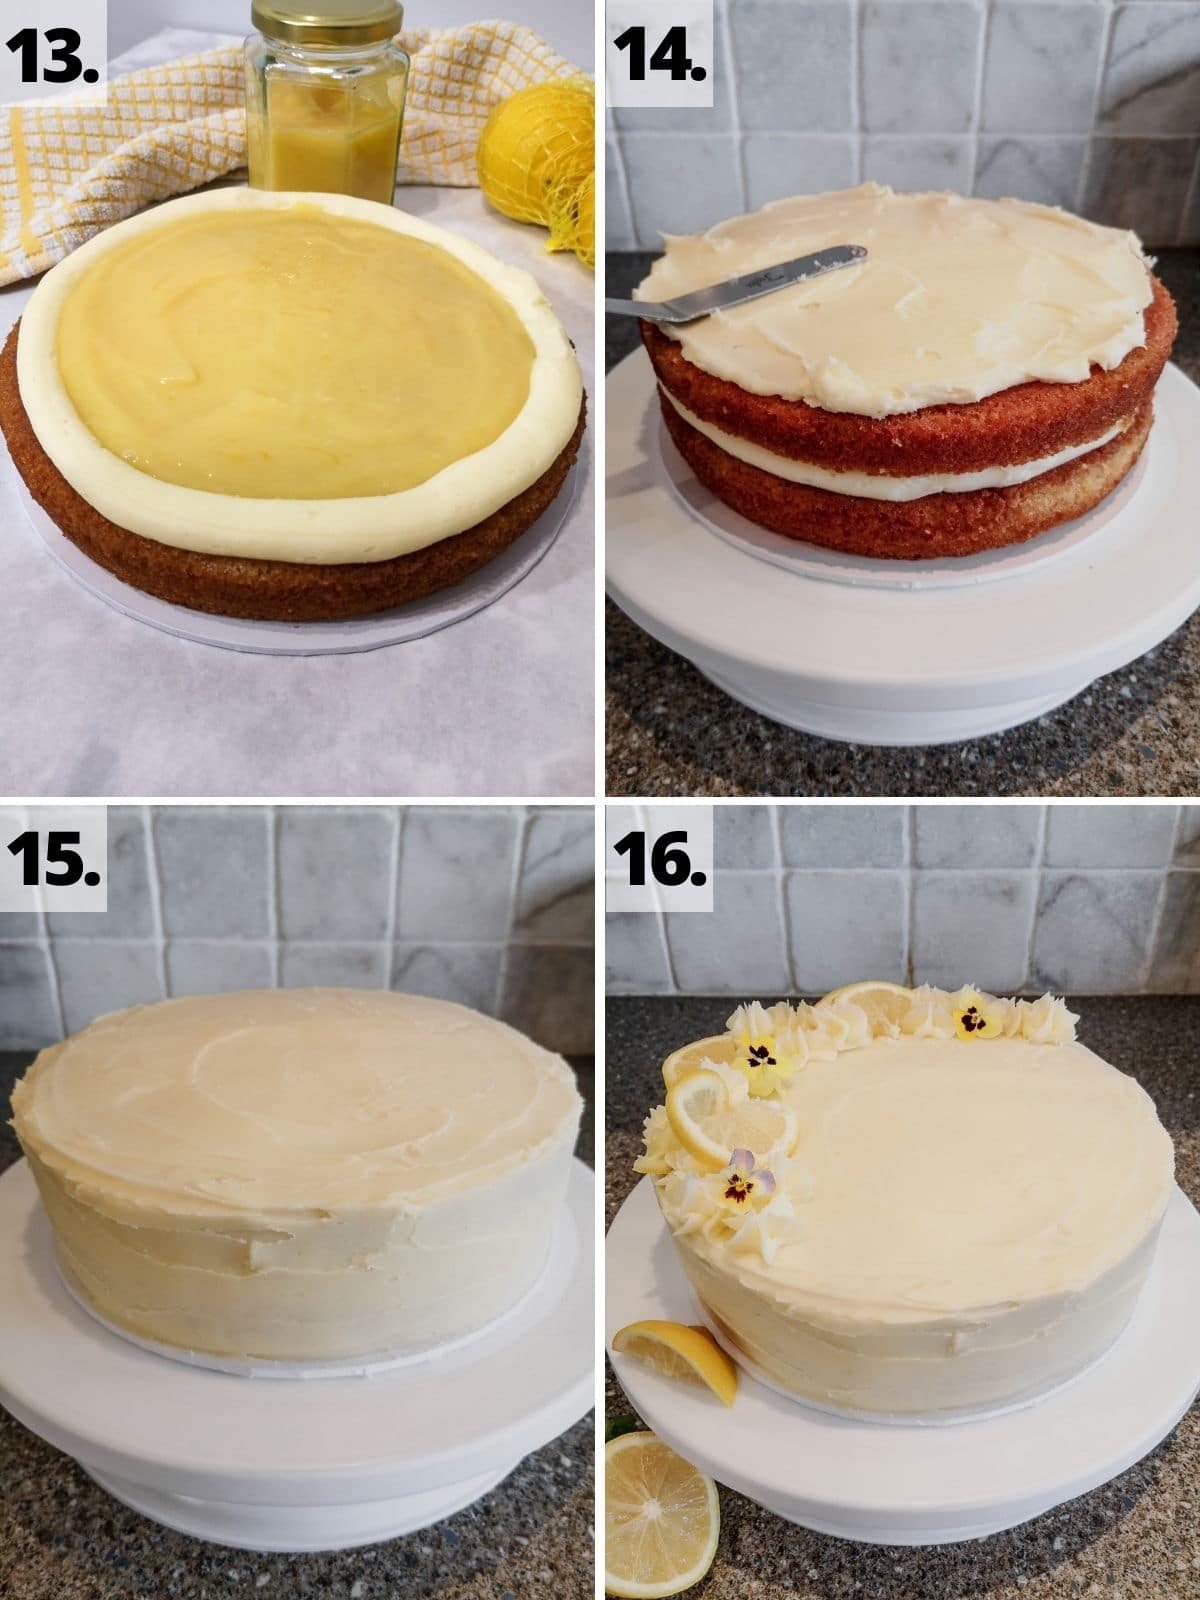 lemon curd cake recipe method assembly steps 13-16